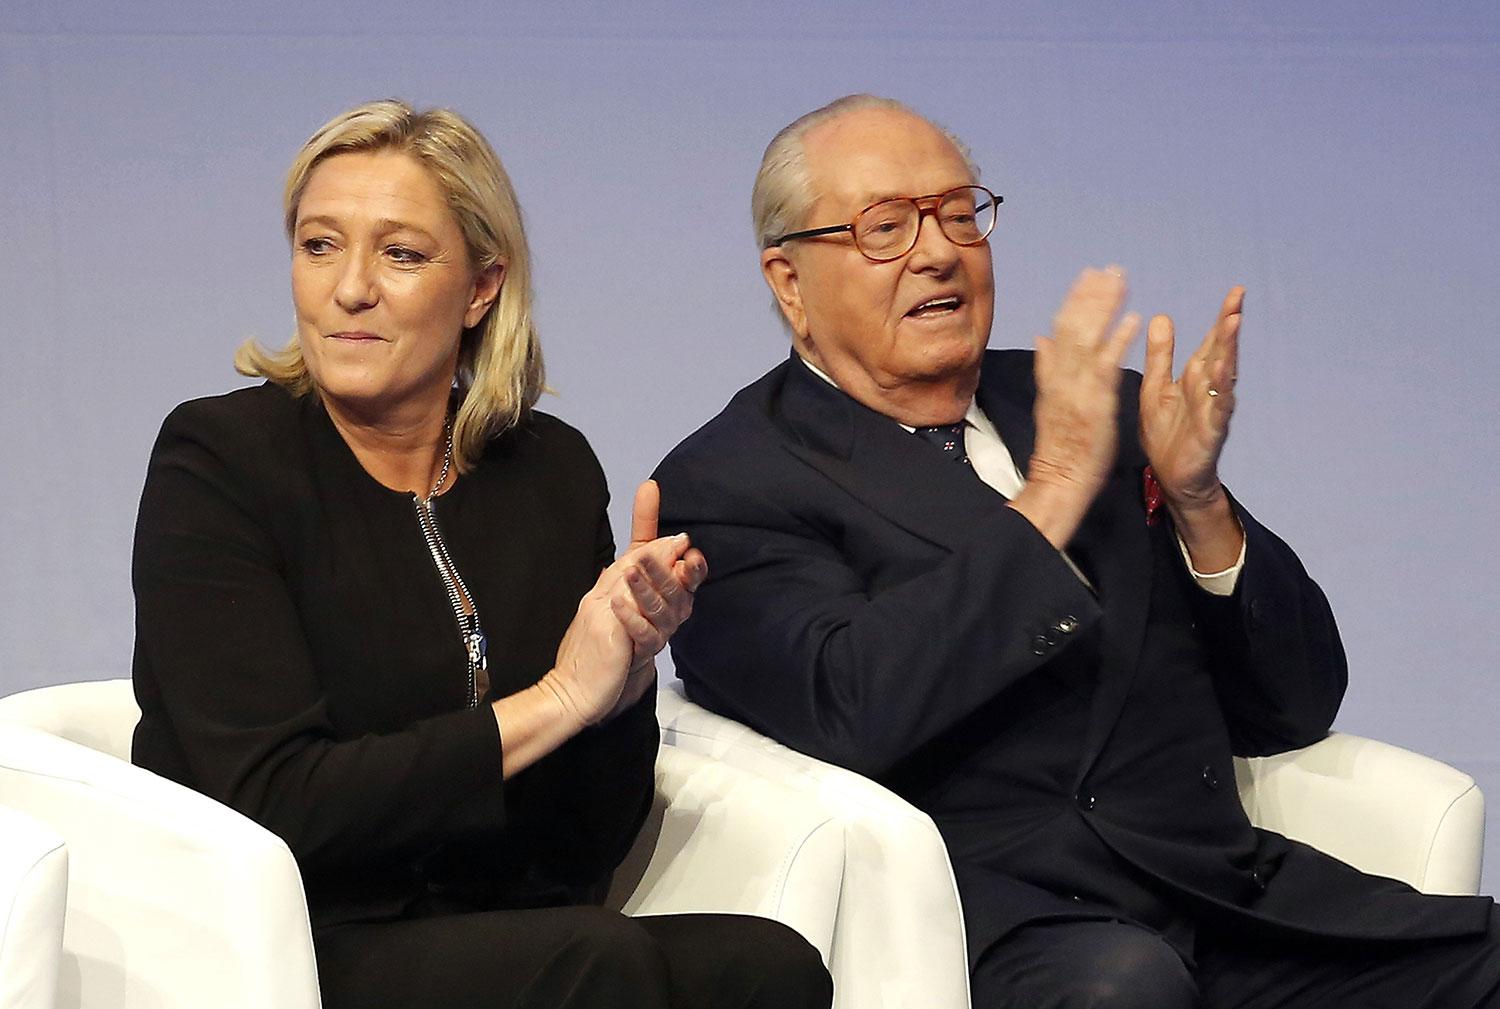 ”Om jag var amerikan skulle jag rösta på honom”, twittrar Jean-Marie Le Pen (till höger).